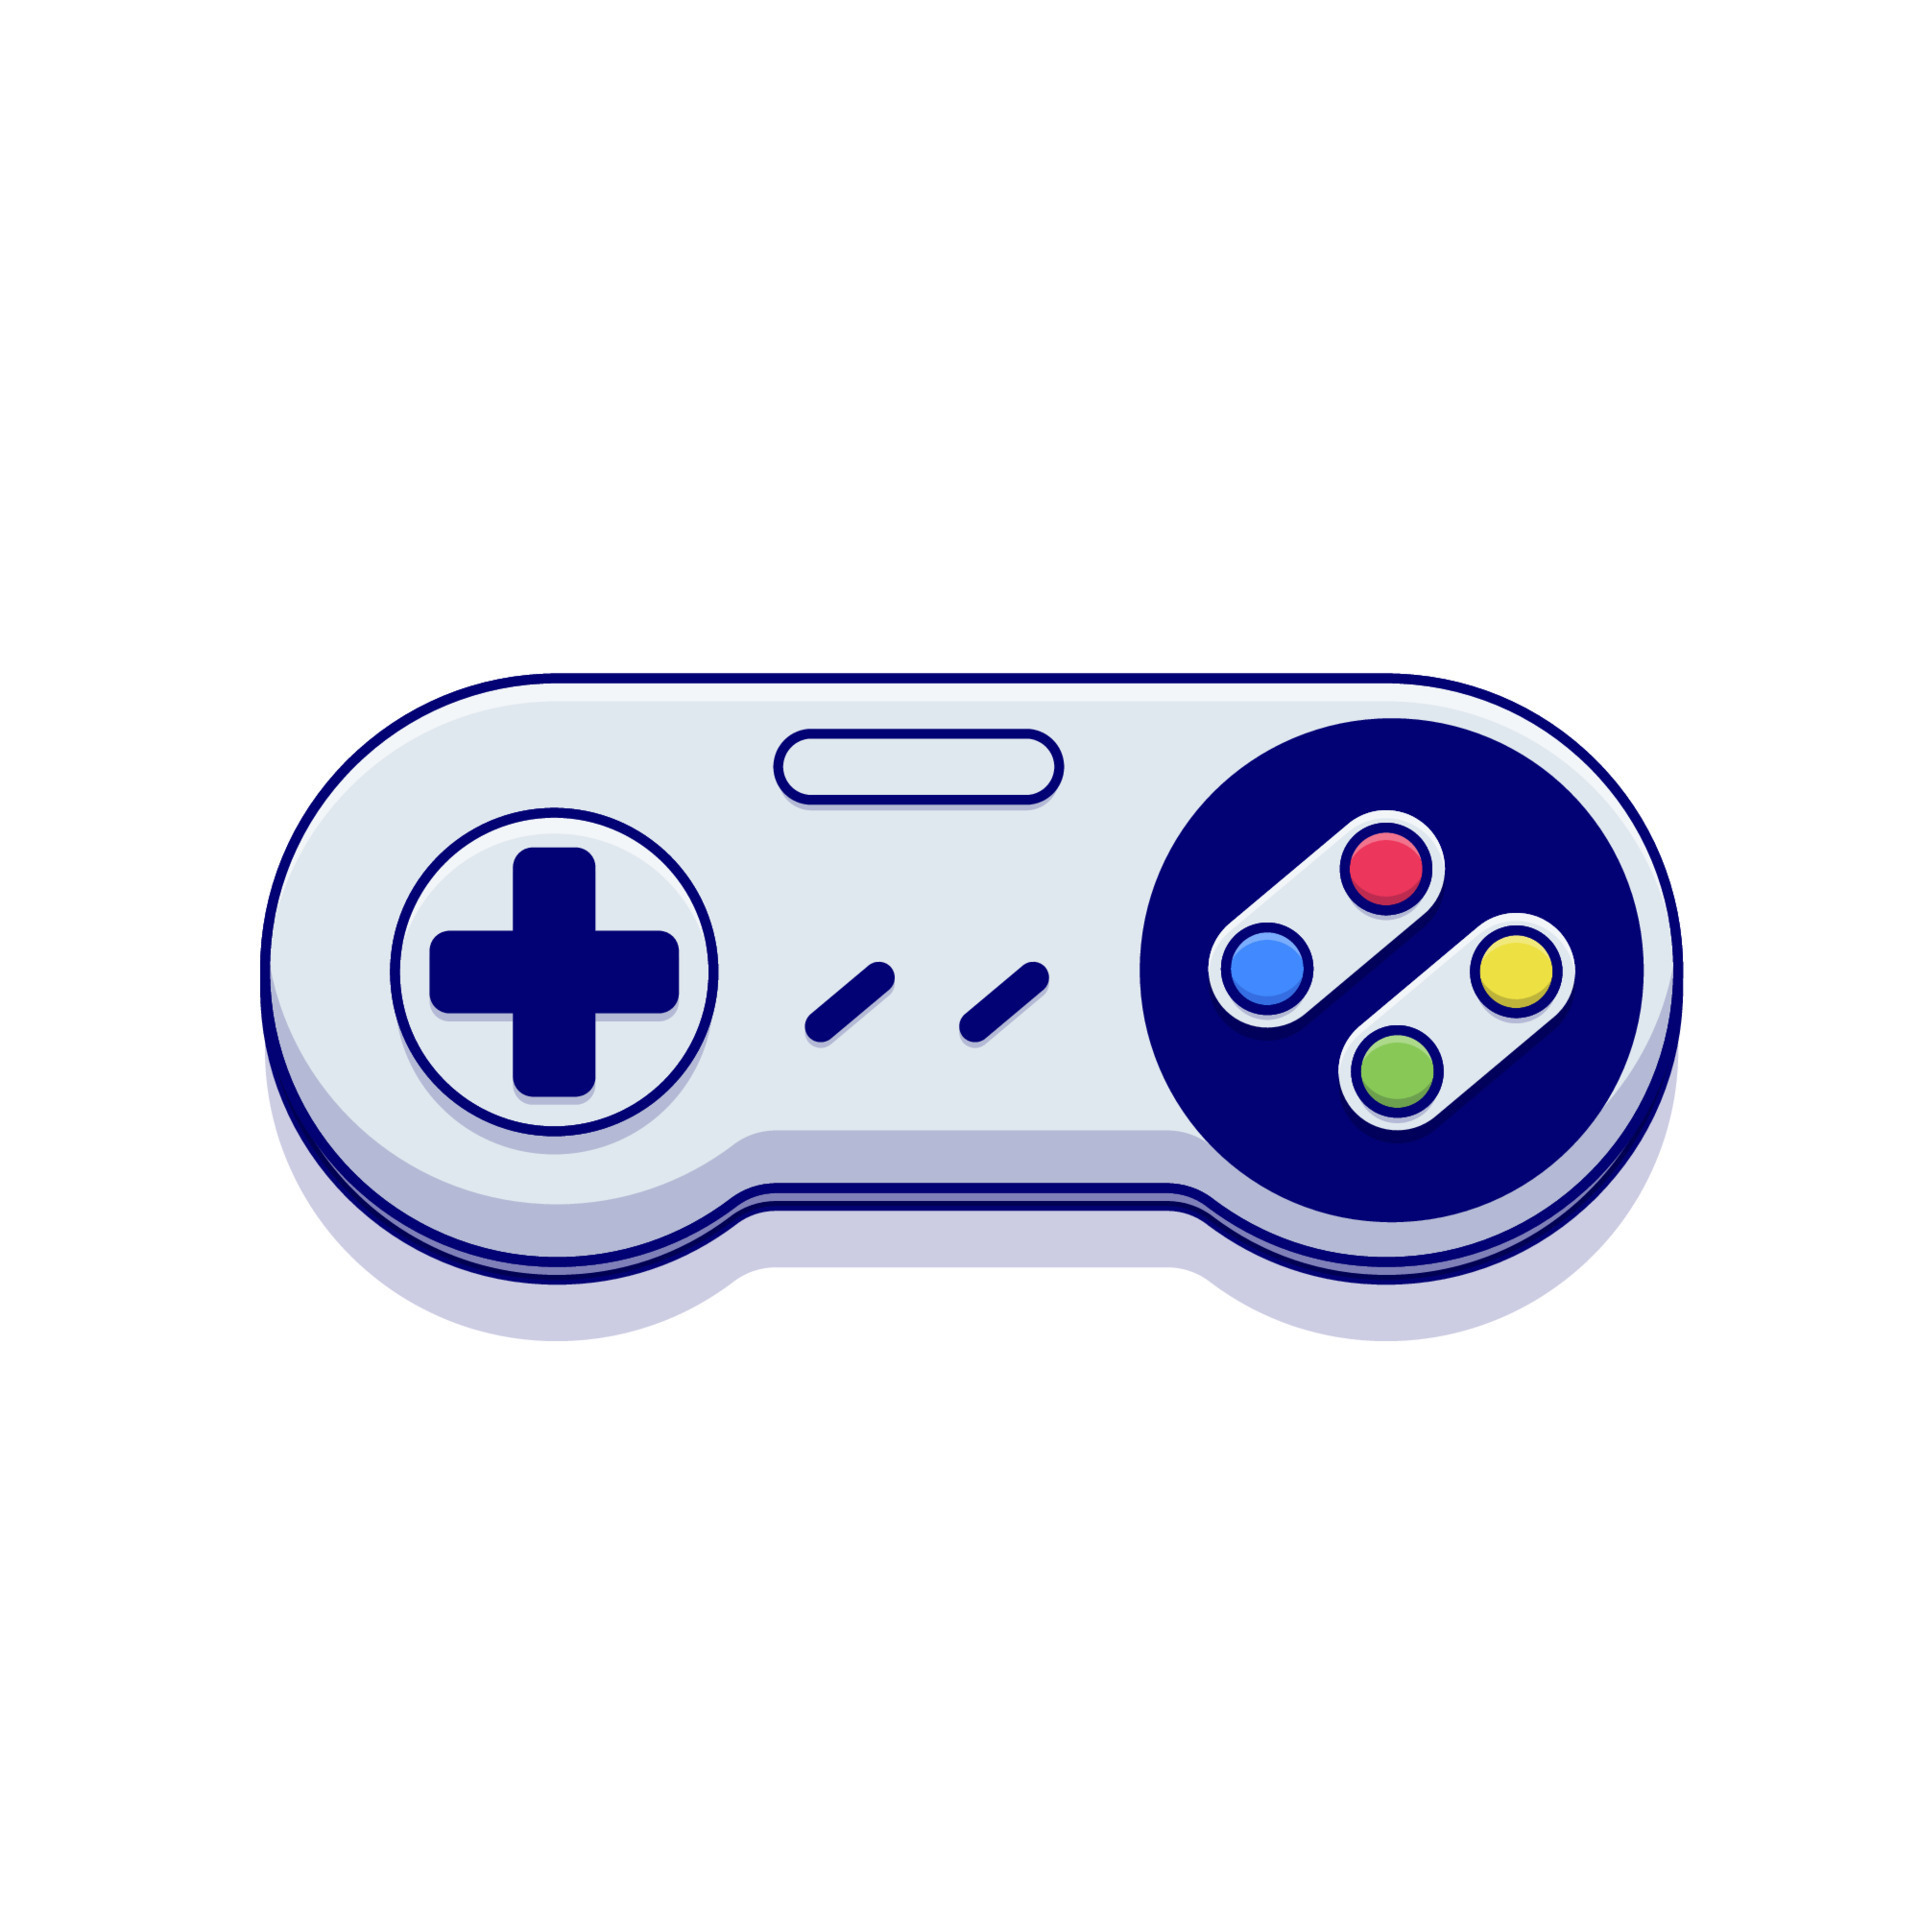 ilustração do ícone do vetor dos desenhos animados jogo joystick. ícone de  jogo isolado plano 15870408 Vetor no Vecteezy